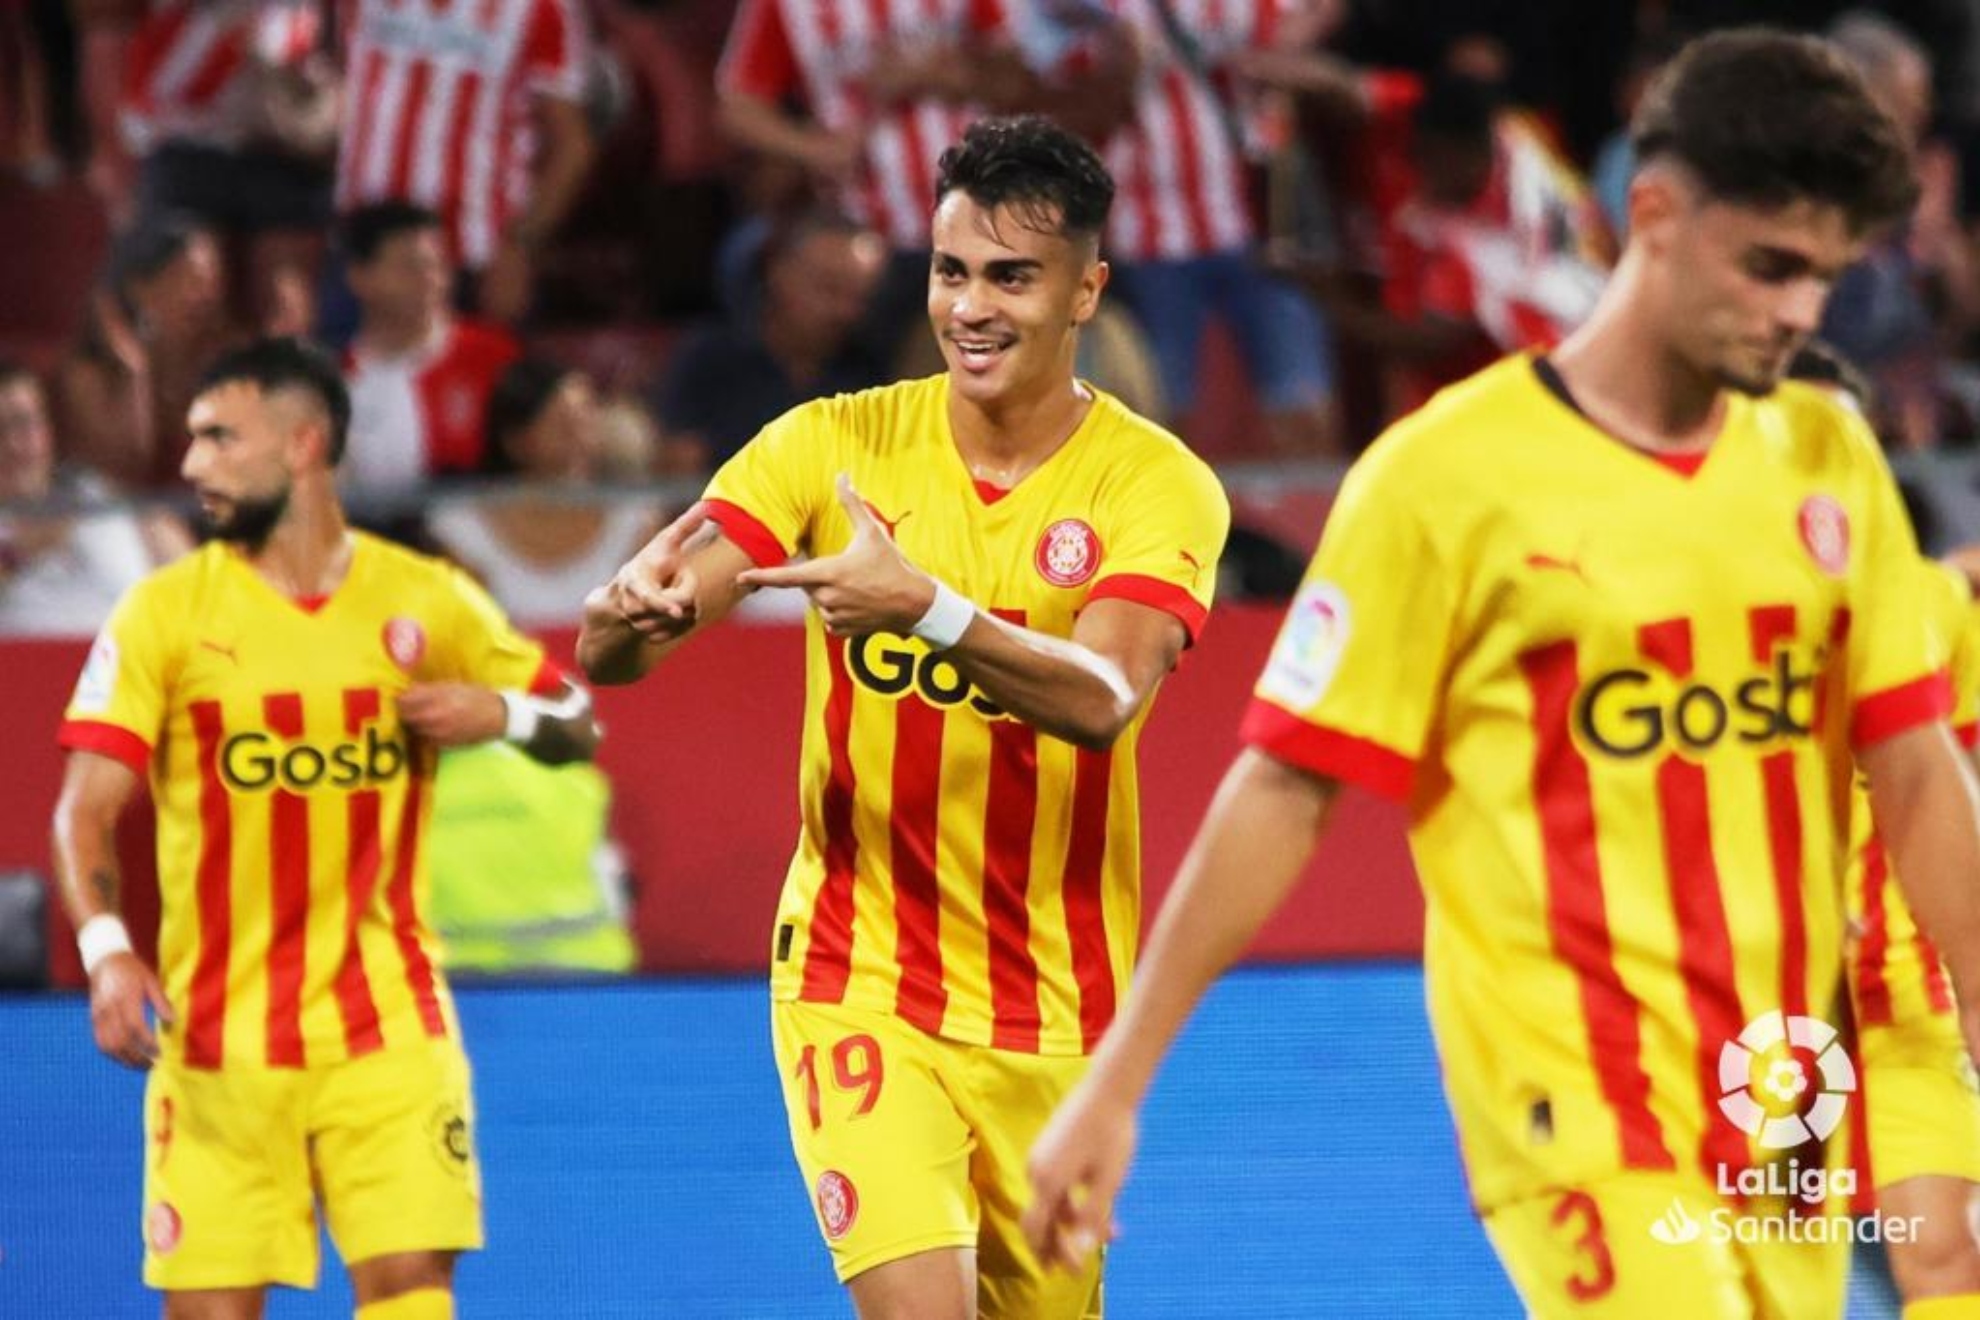 Reinier celebra su primer gol con el Girona. / LALIGA